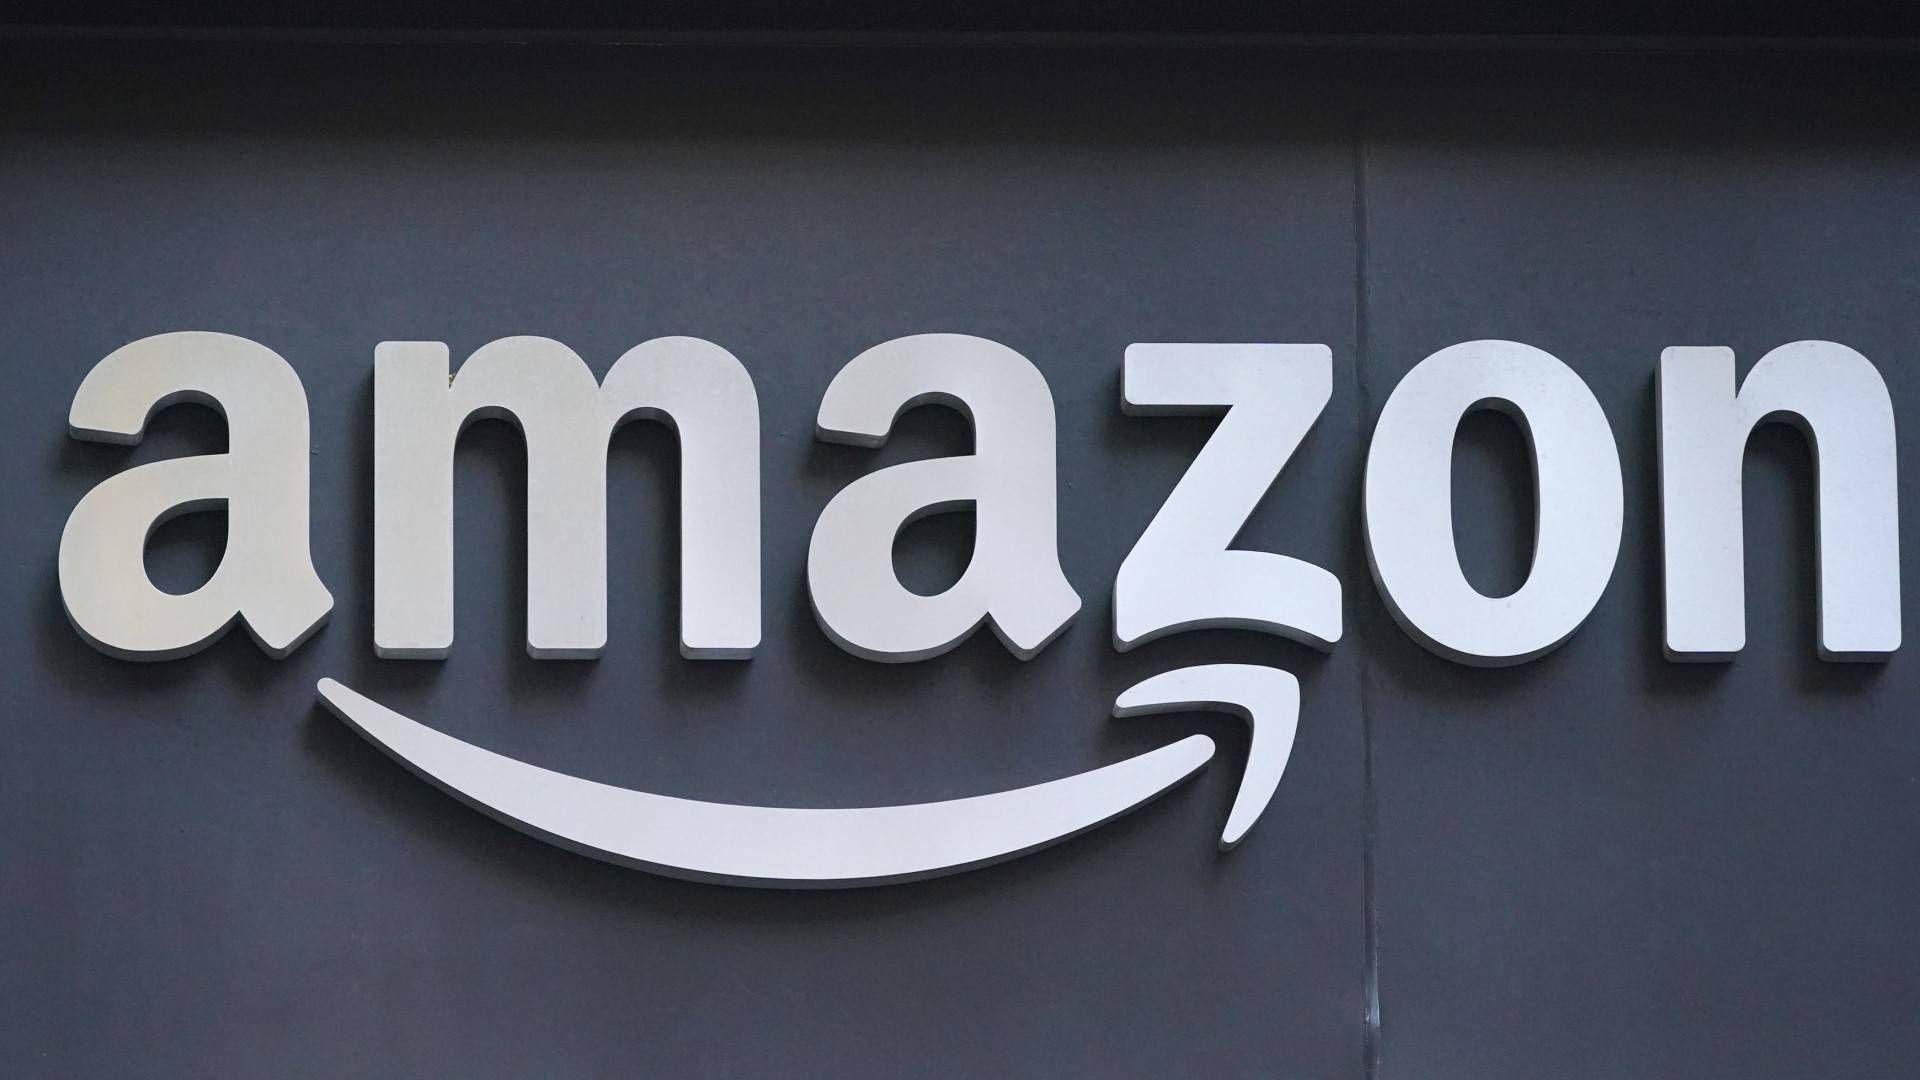 Amazon er børsnoteret og har hovedkontor i Seattle i USA. Jeff Bezos stiftede selskabet i 1994.